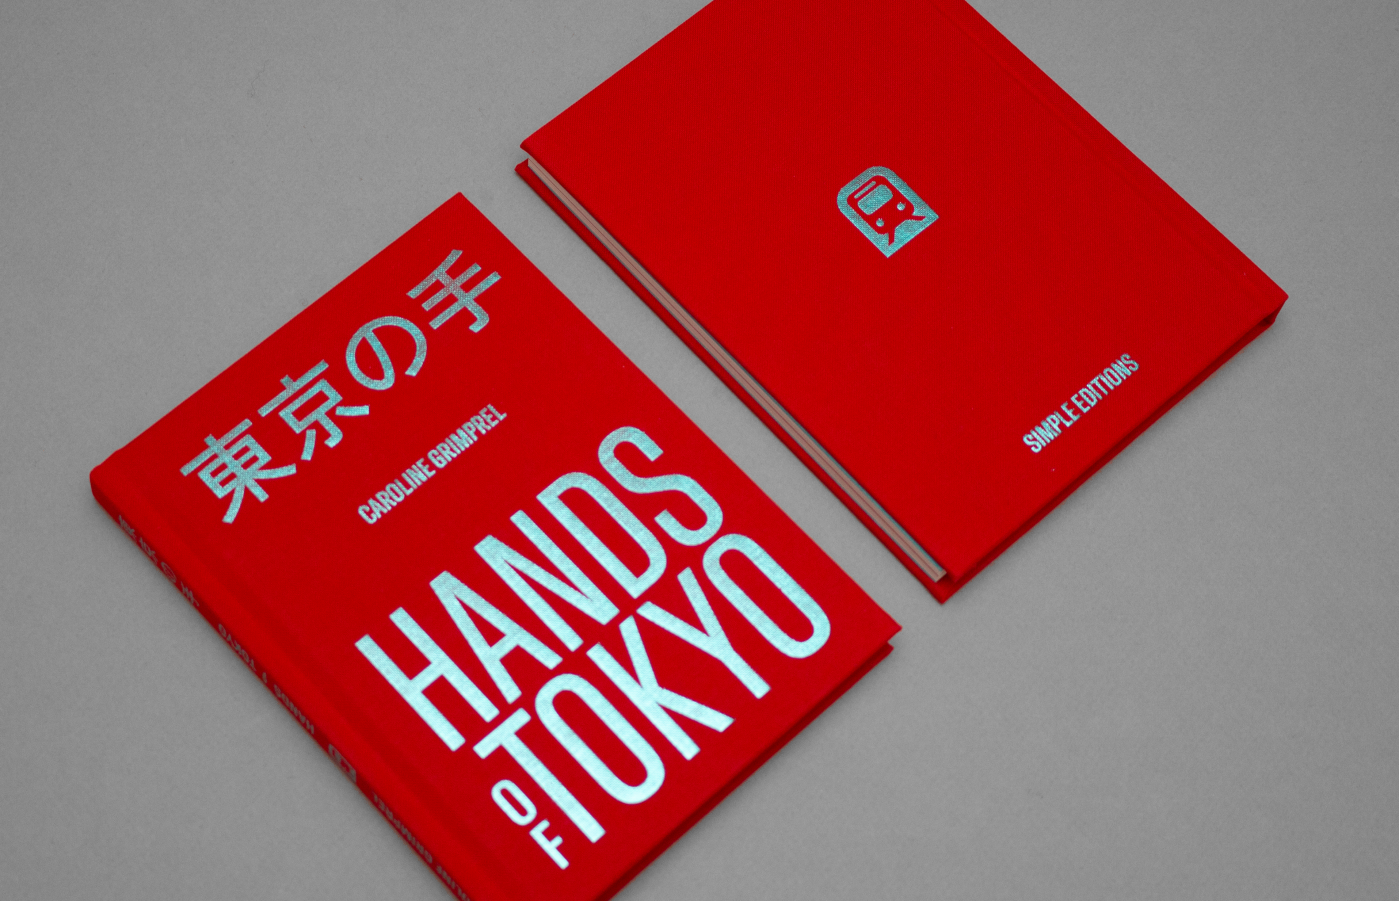 Hands of Tokyo